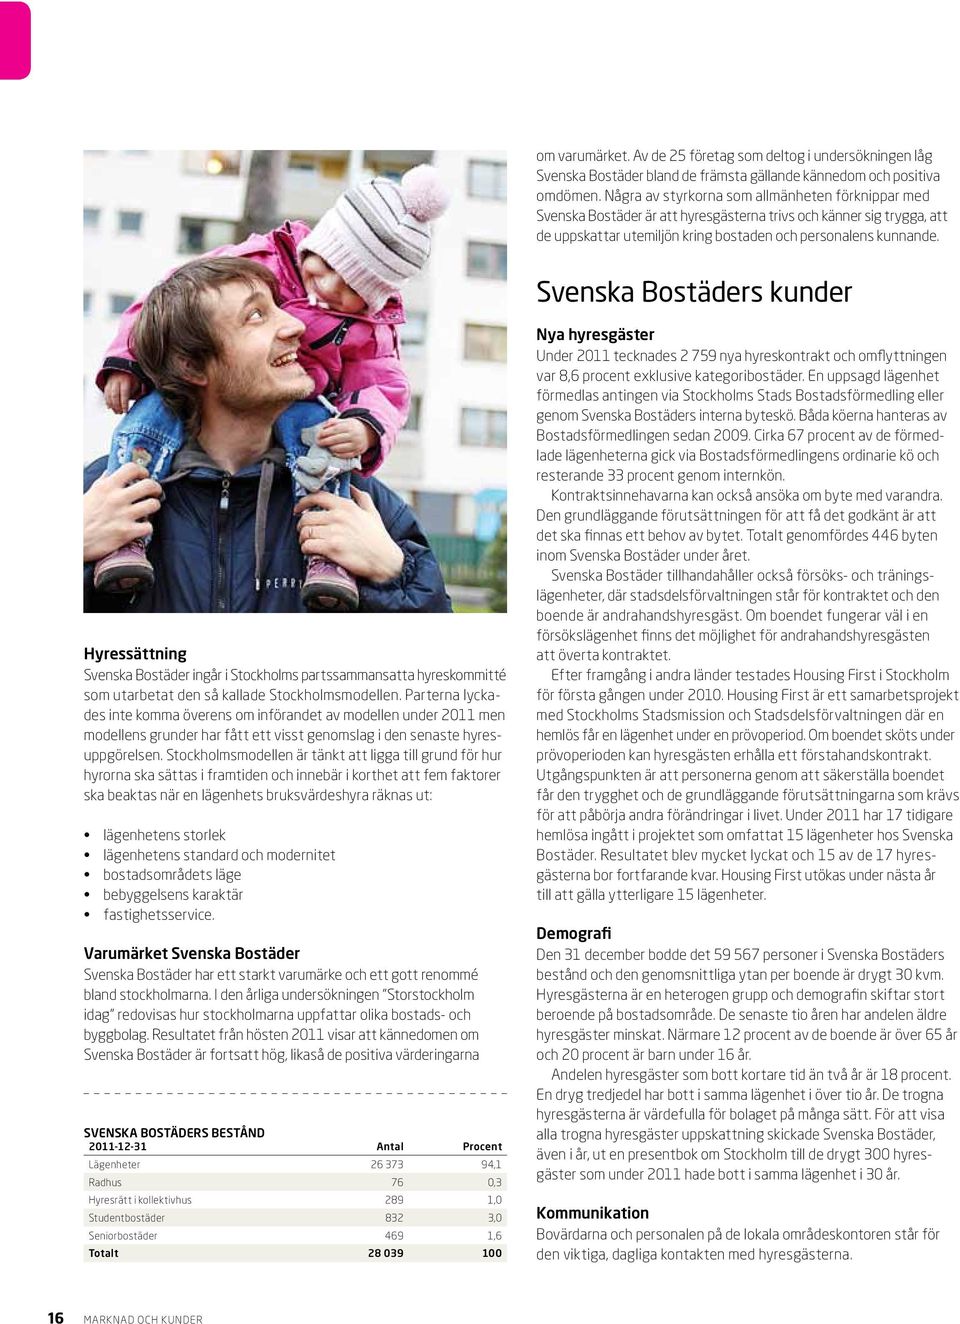 Svenska Bostäders kunder Hyressättning Svenska Bostäder ingår i Stockholms partssammansatta hyreskommitté som utarbetat den så kallade Stockholmsmodellen.